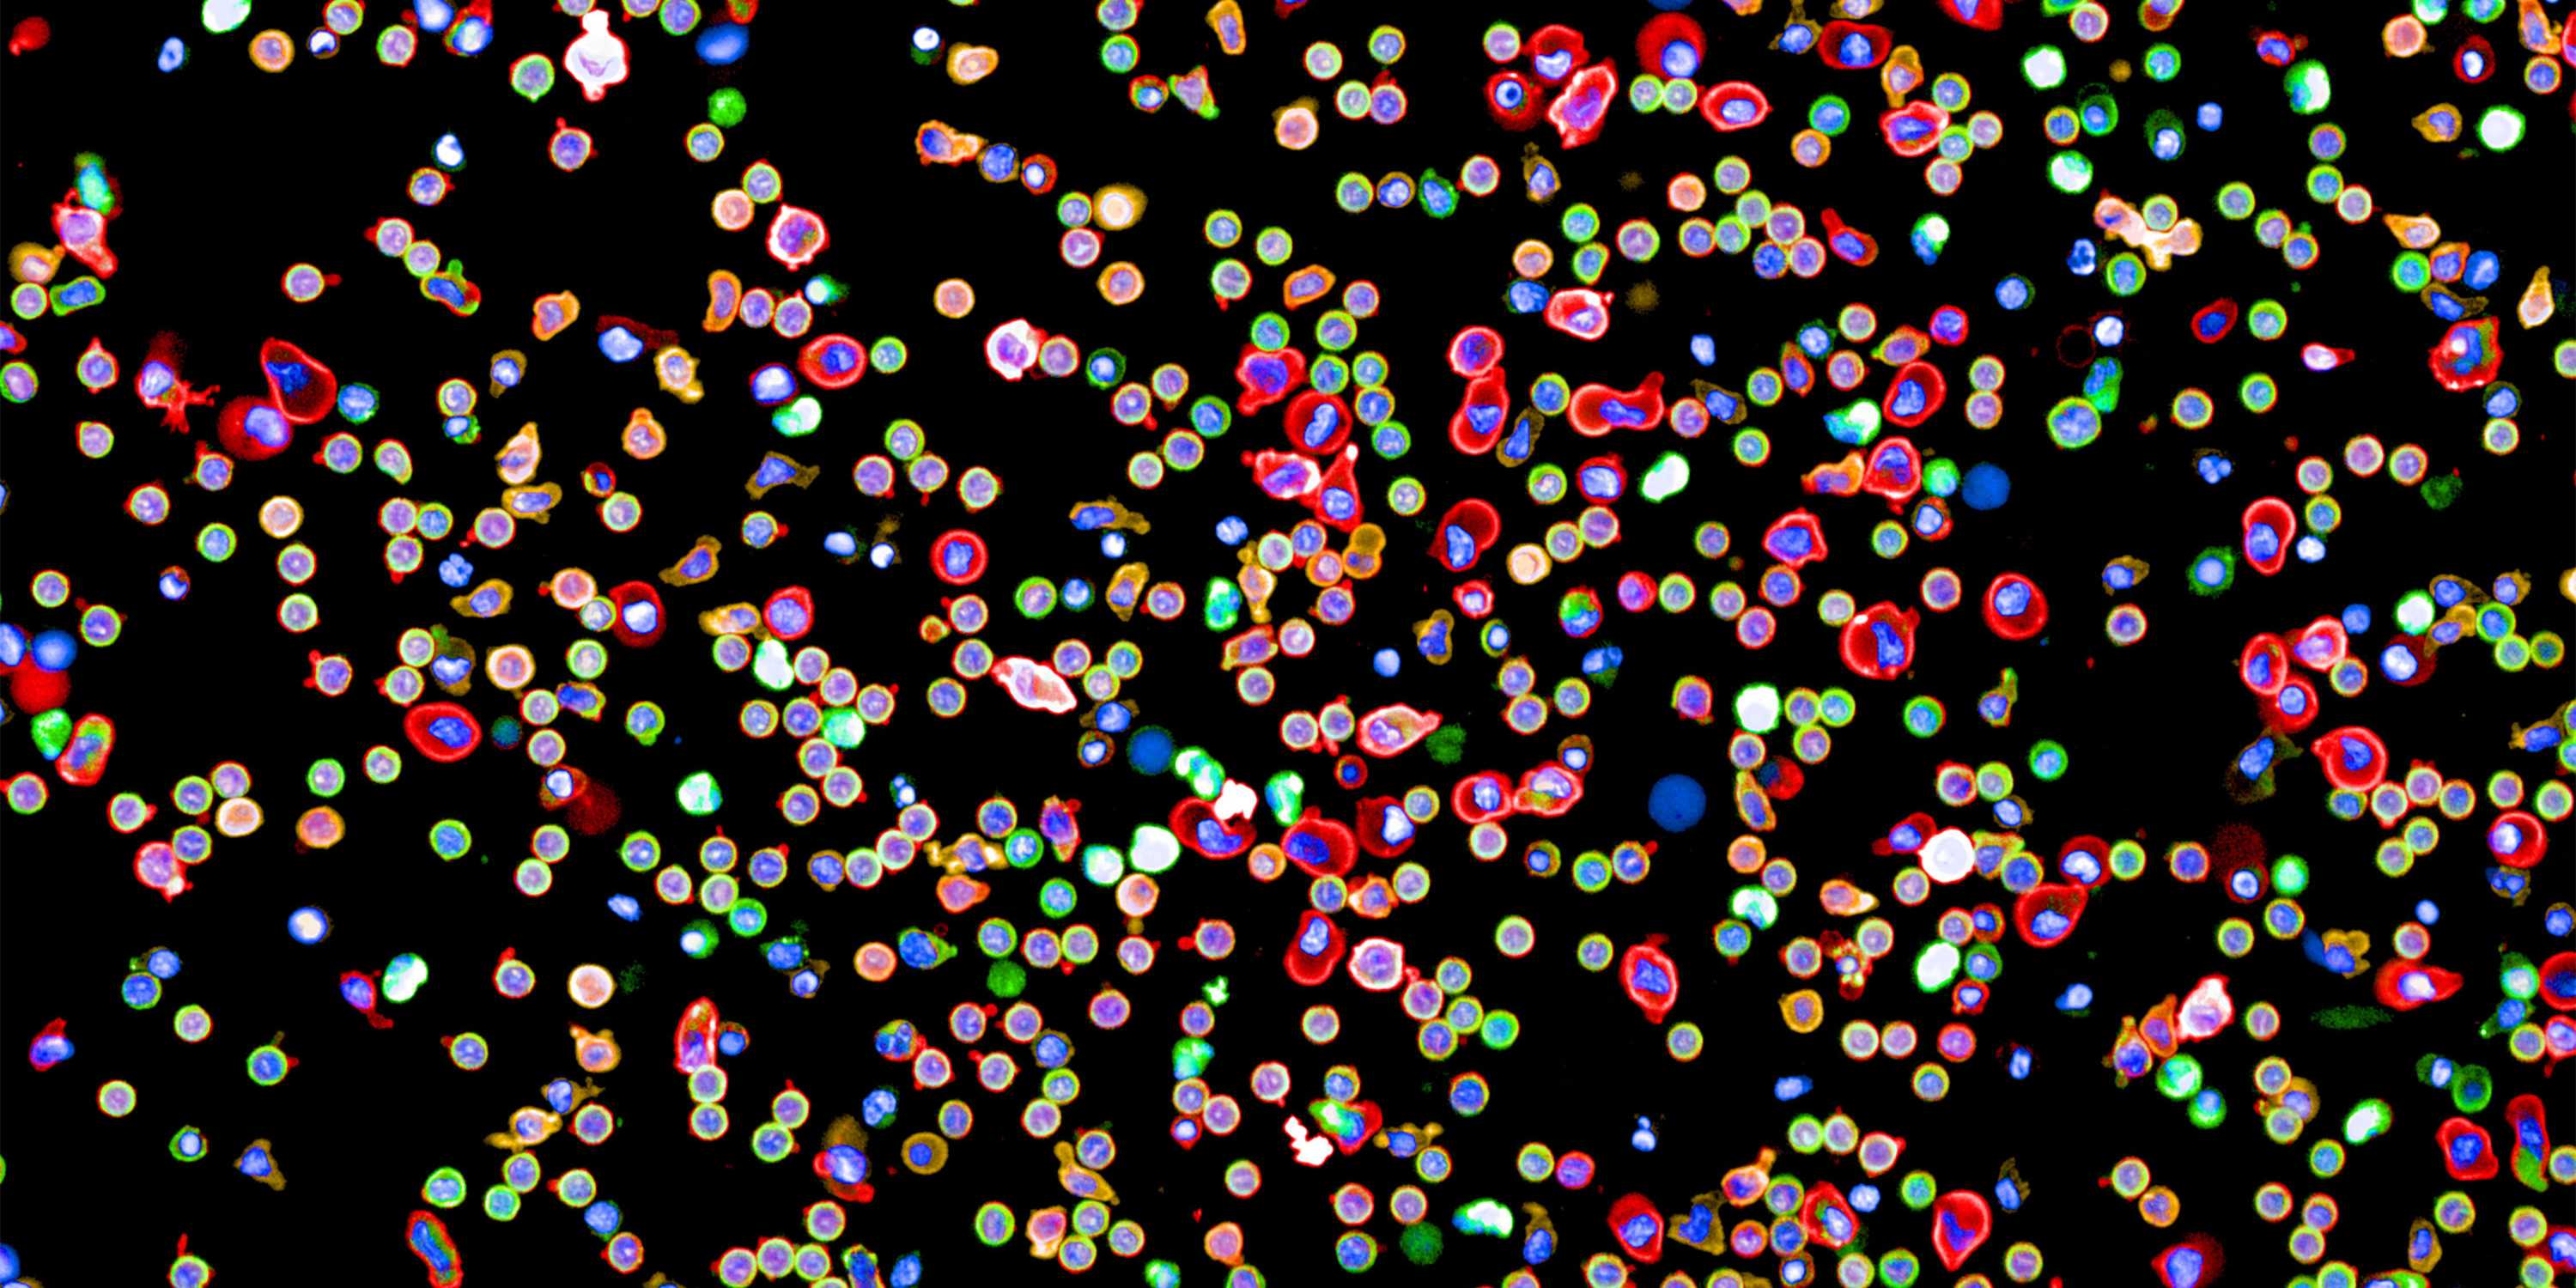  Immunzellen aus dem Blut eines Menschen, die in einem Durchgang mit einem neuartigen Immunfluoreszenz-​Verfahren angefärbt wurden. (Bild: Yannik Severin, Julien Mena, Berend Snijder / ETH Zürich)